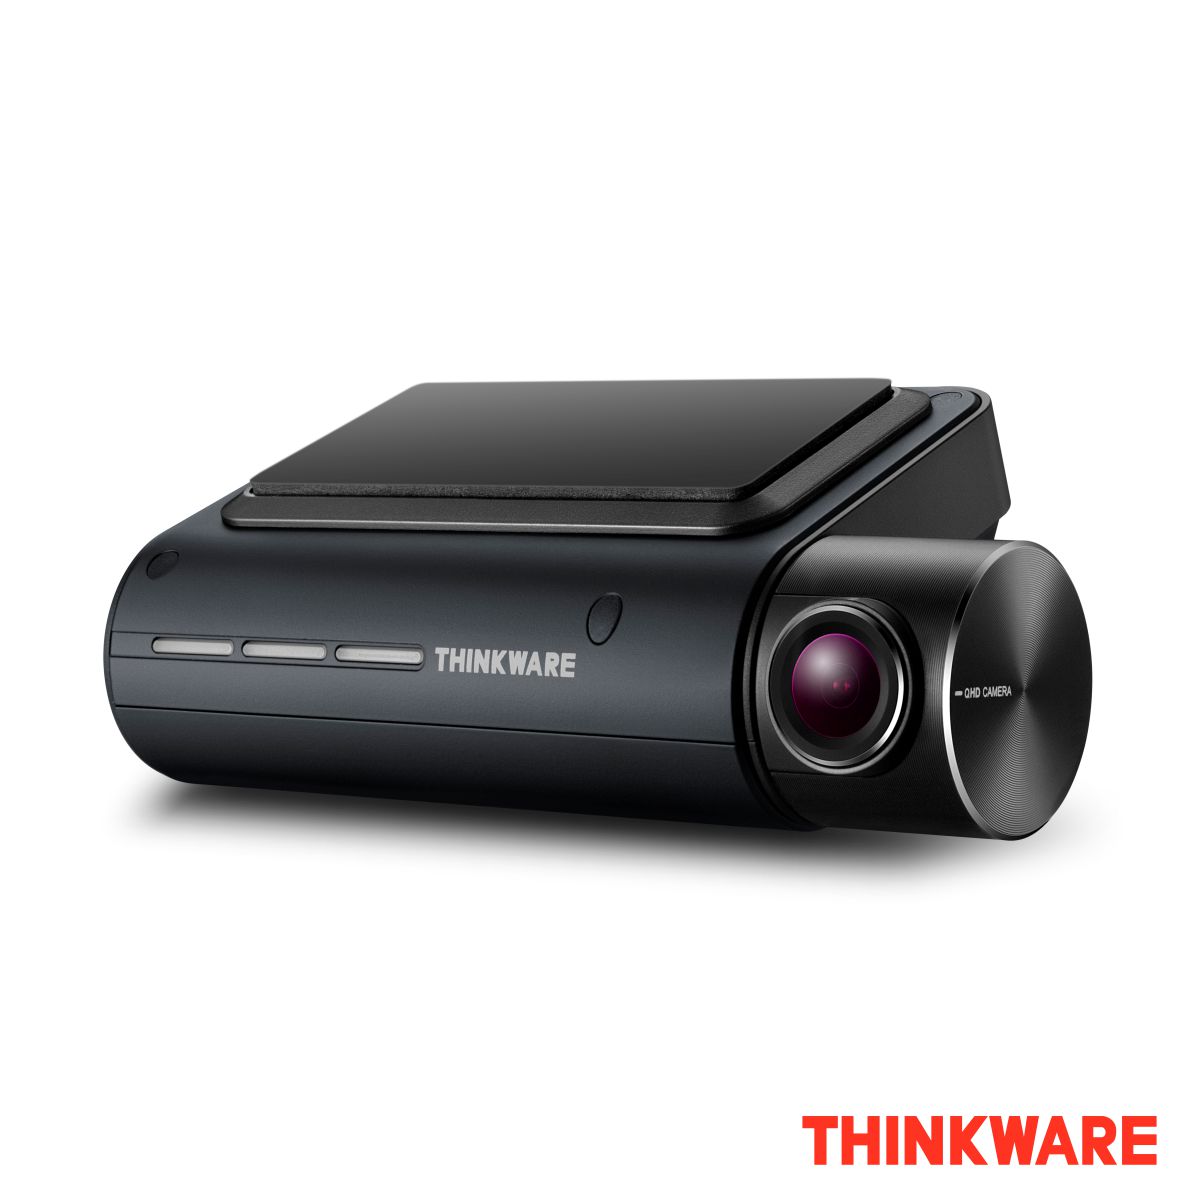 carte SD de 16 Go Thinkware Q800 Pro Dash Cam caméra voiture avant 2K 1440P QHD - Modèle EU câble pour brancher à la batterie de la voiture application Android / iOS 